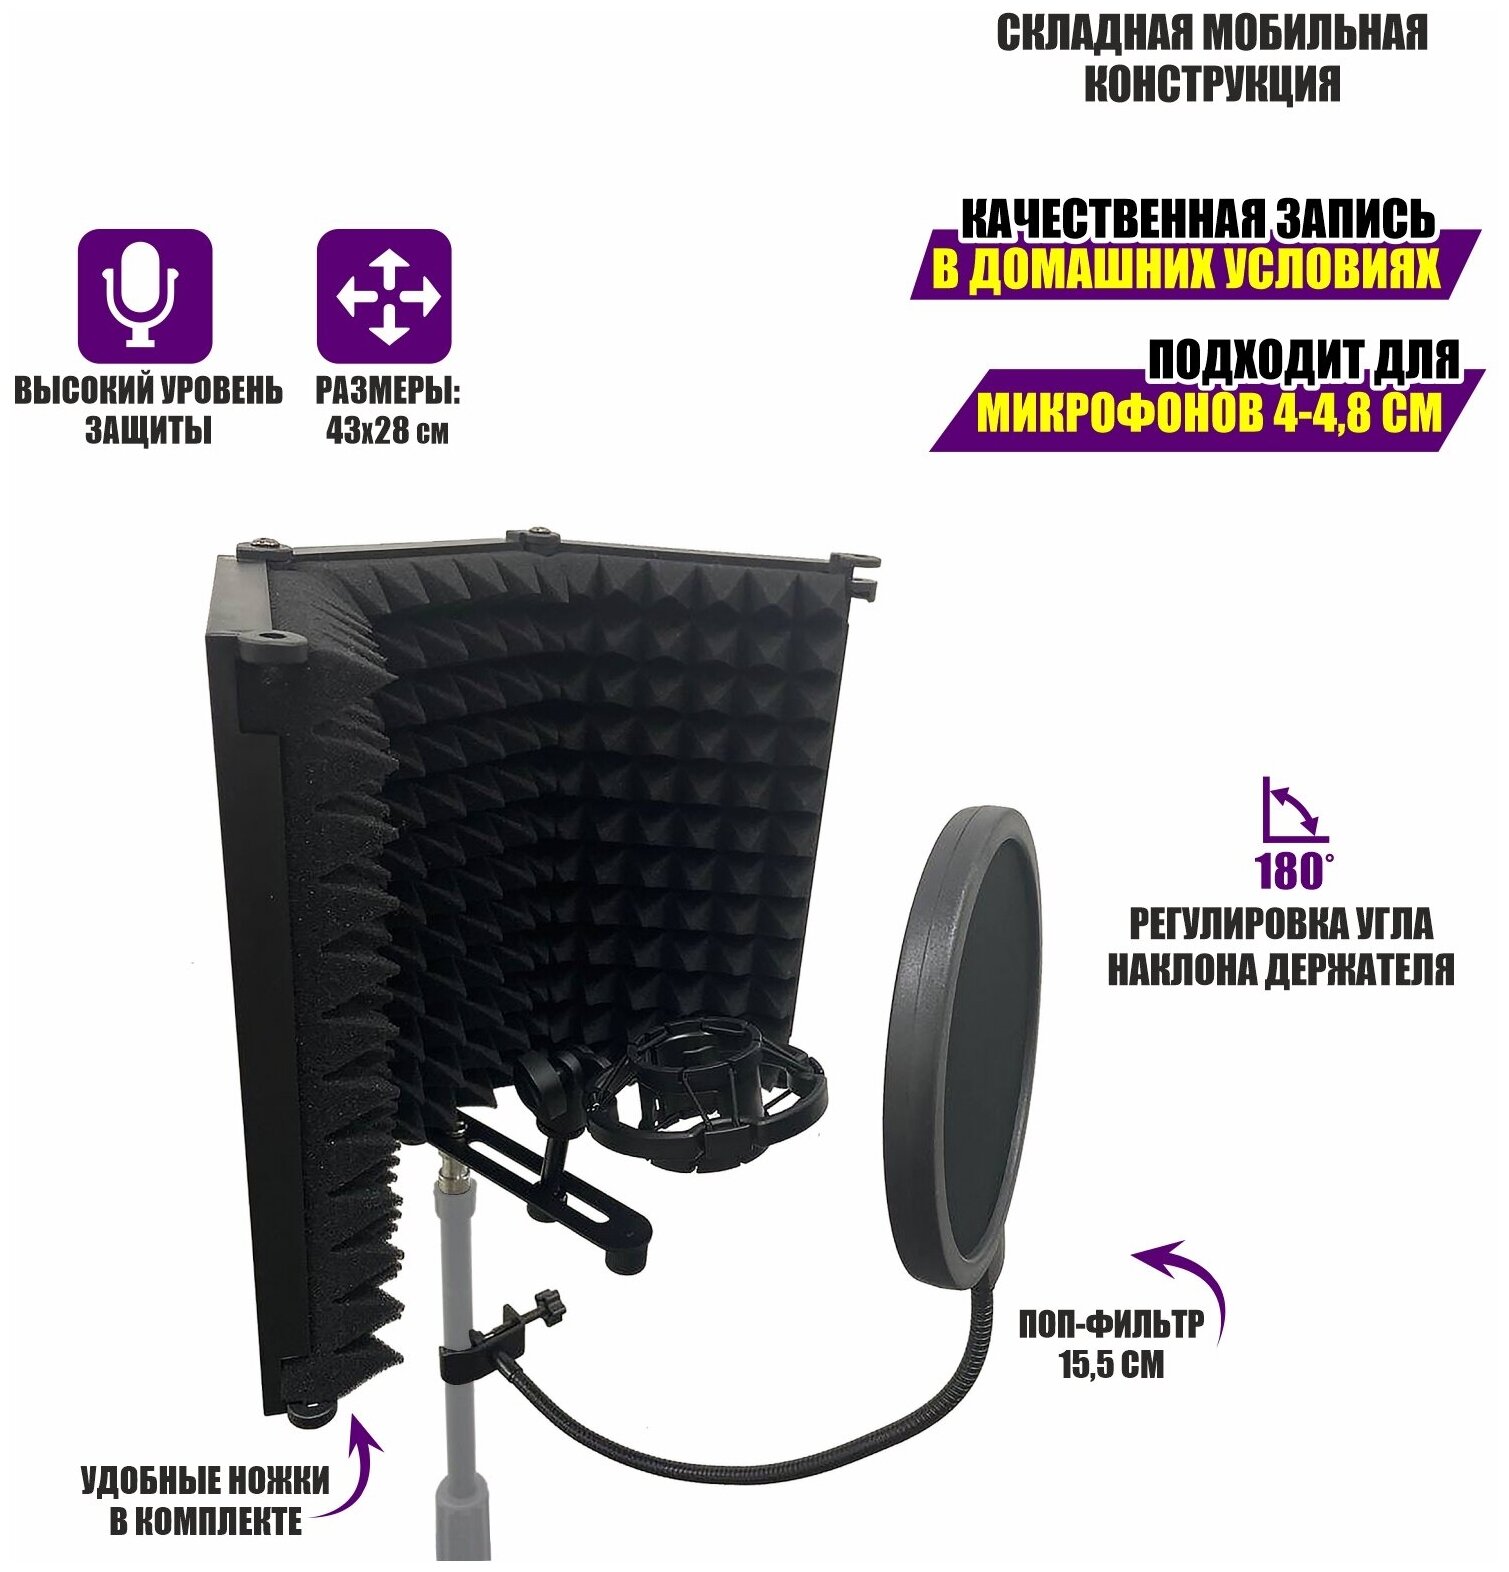 Акустический экран AK01-38P1P с держателем для микрофона паук P1 и поп фильтром диаметром 15.5 см на стойку с резьбой крепления 3/8